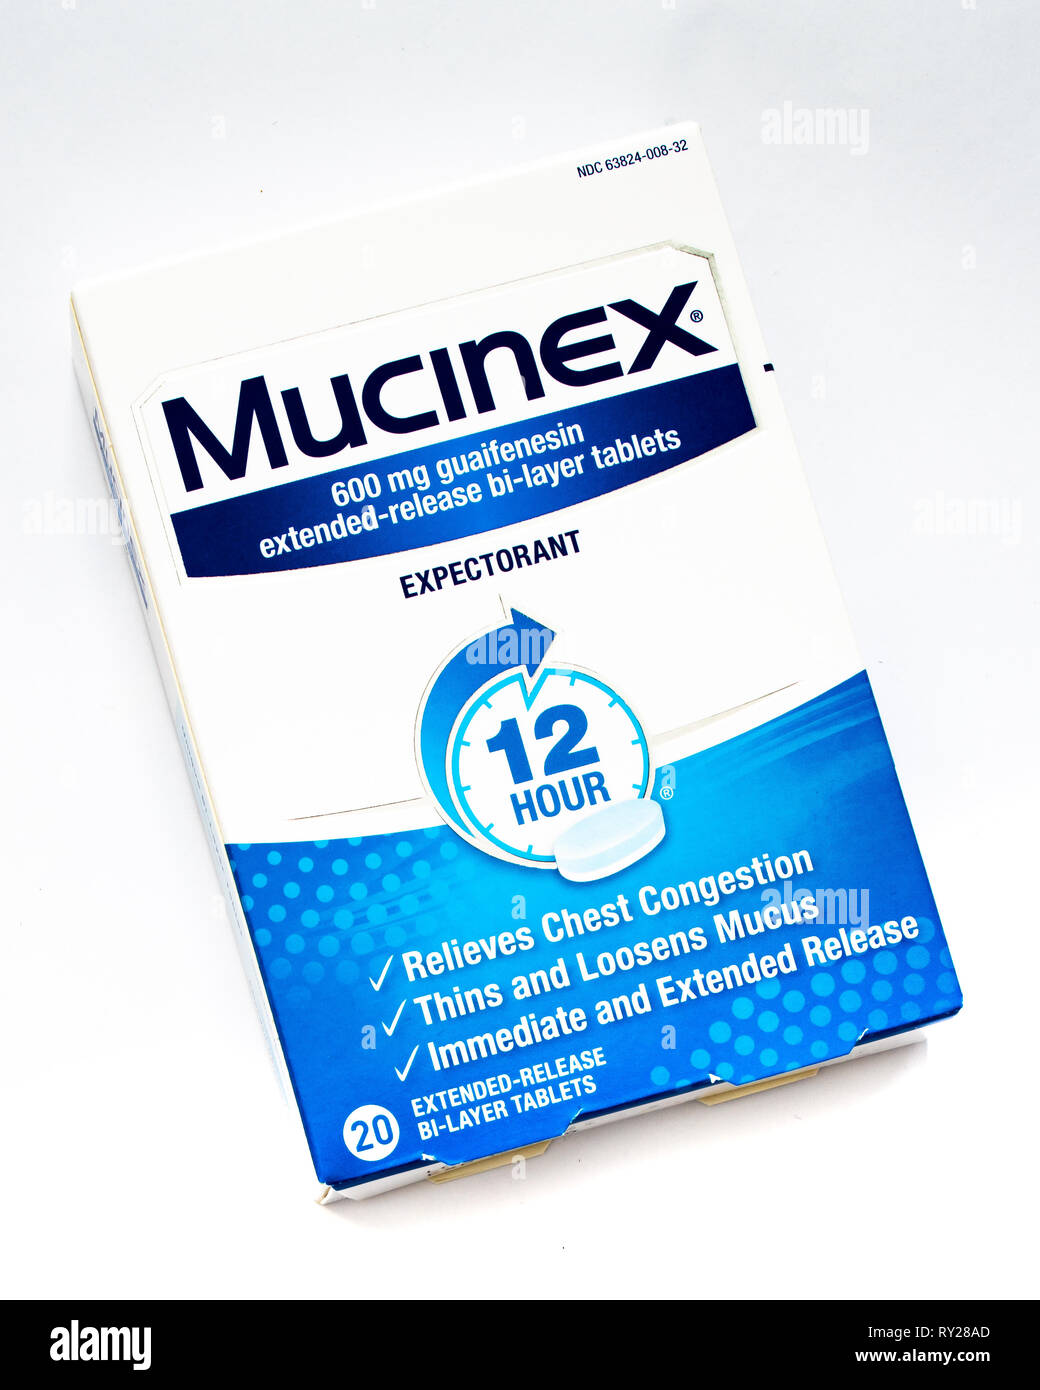 Ein Paket von Mucinex erweiterte Freigabe bi-layer Tabletten Kastenansammlung, dünne zu entlasten und den Schleim lösen. Stockfoto